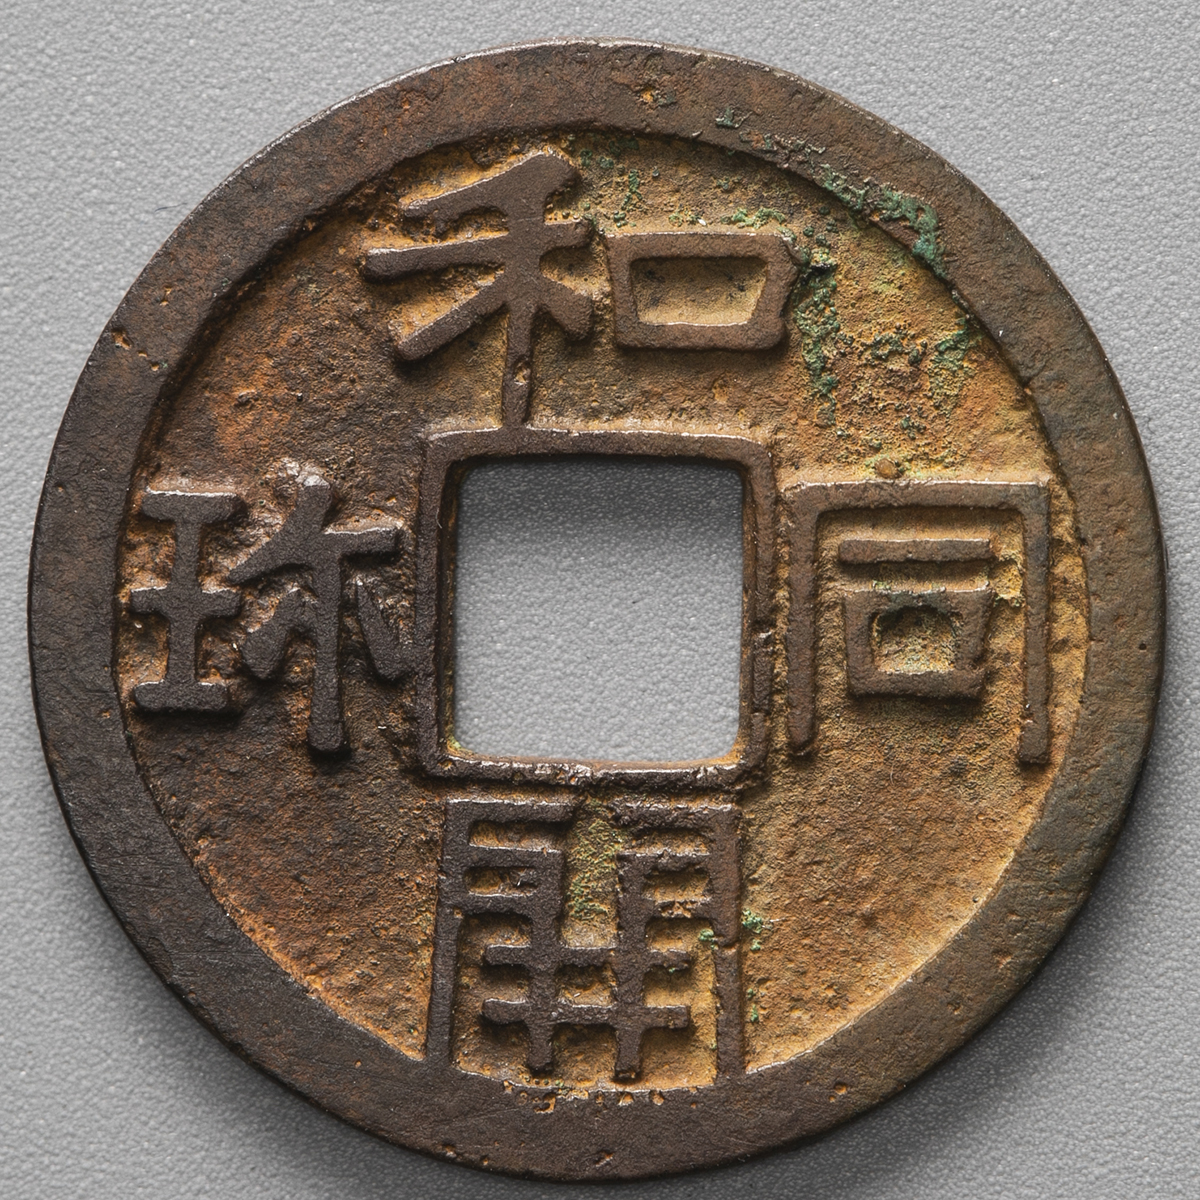 和同開珎 日本貨幣商協同組合鑑定書付き 古銭 - 貨幣